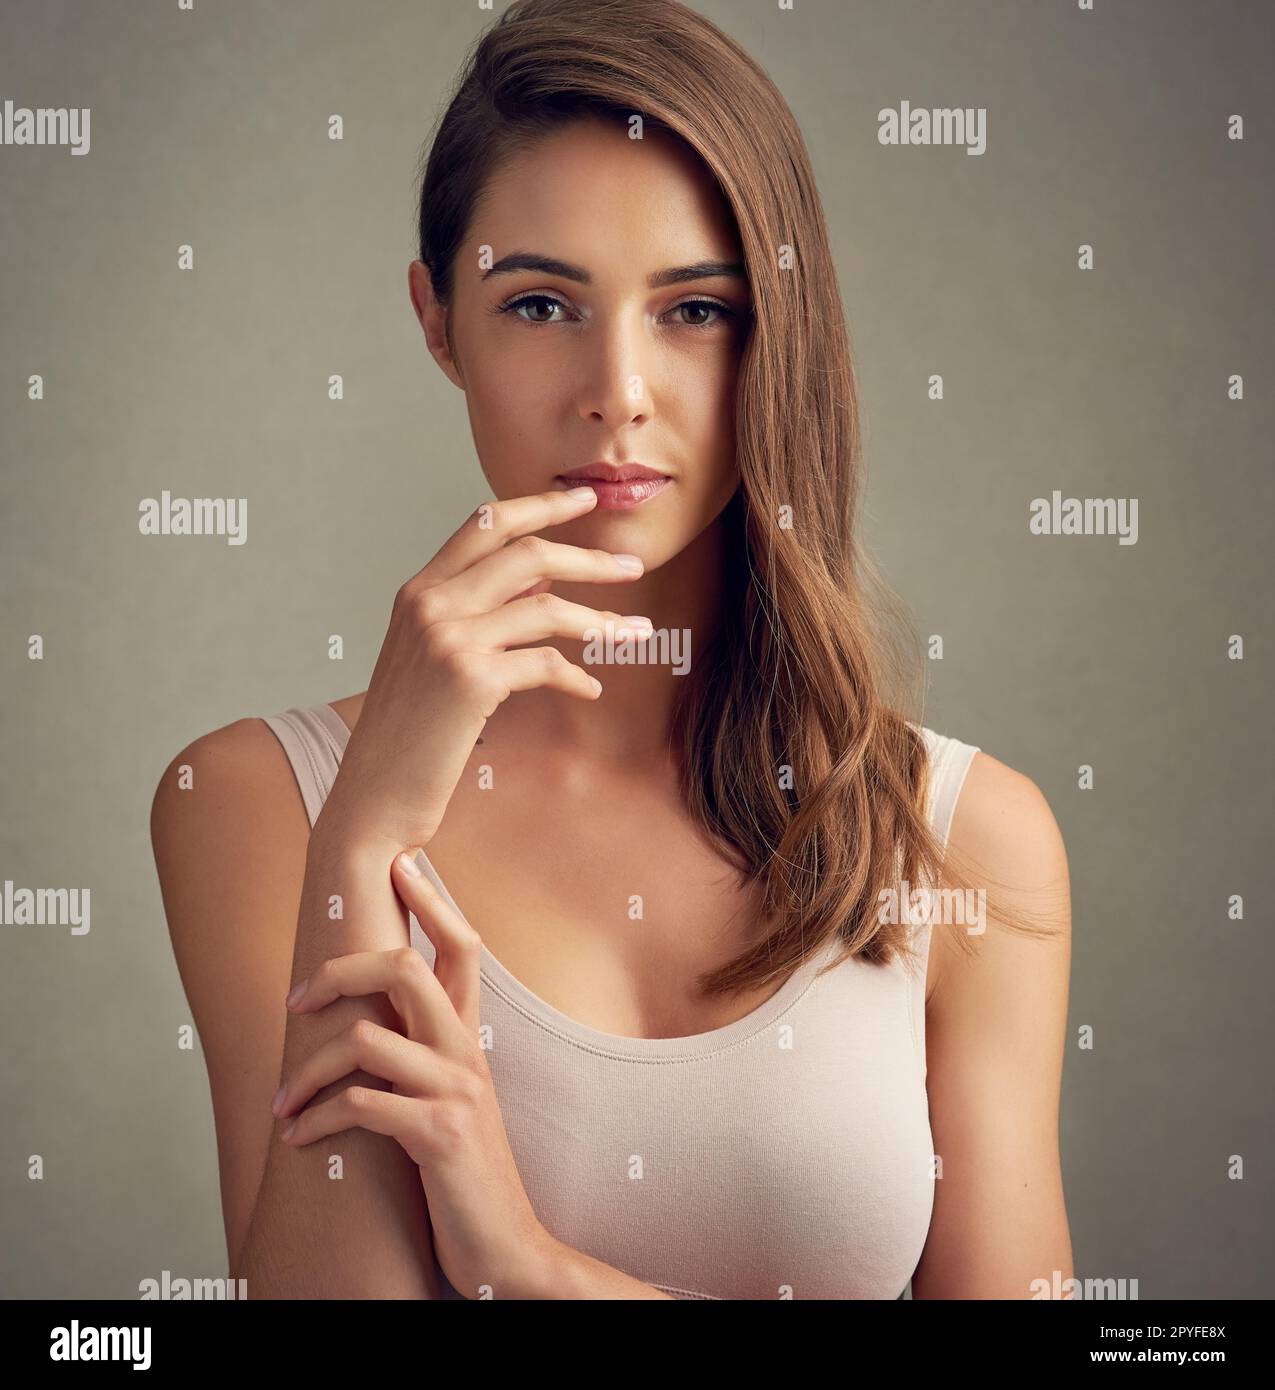 Sie erregt Aufmerksamkeit. Studioporträt einer attraktiven jungen Frau vor braunem Hintergrund. Stockfoto